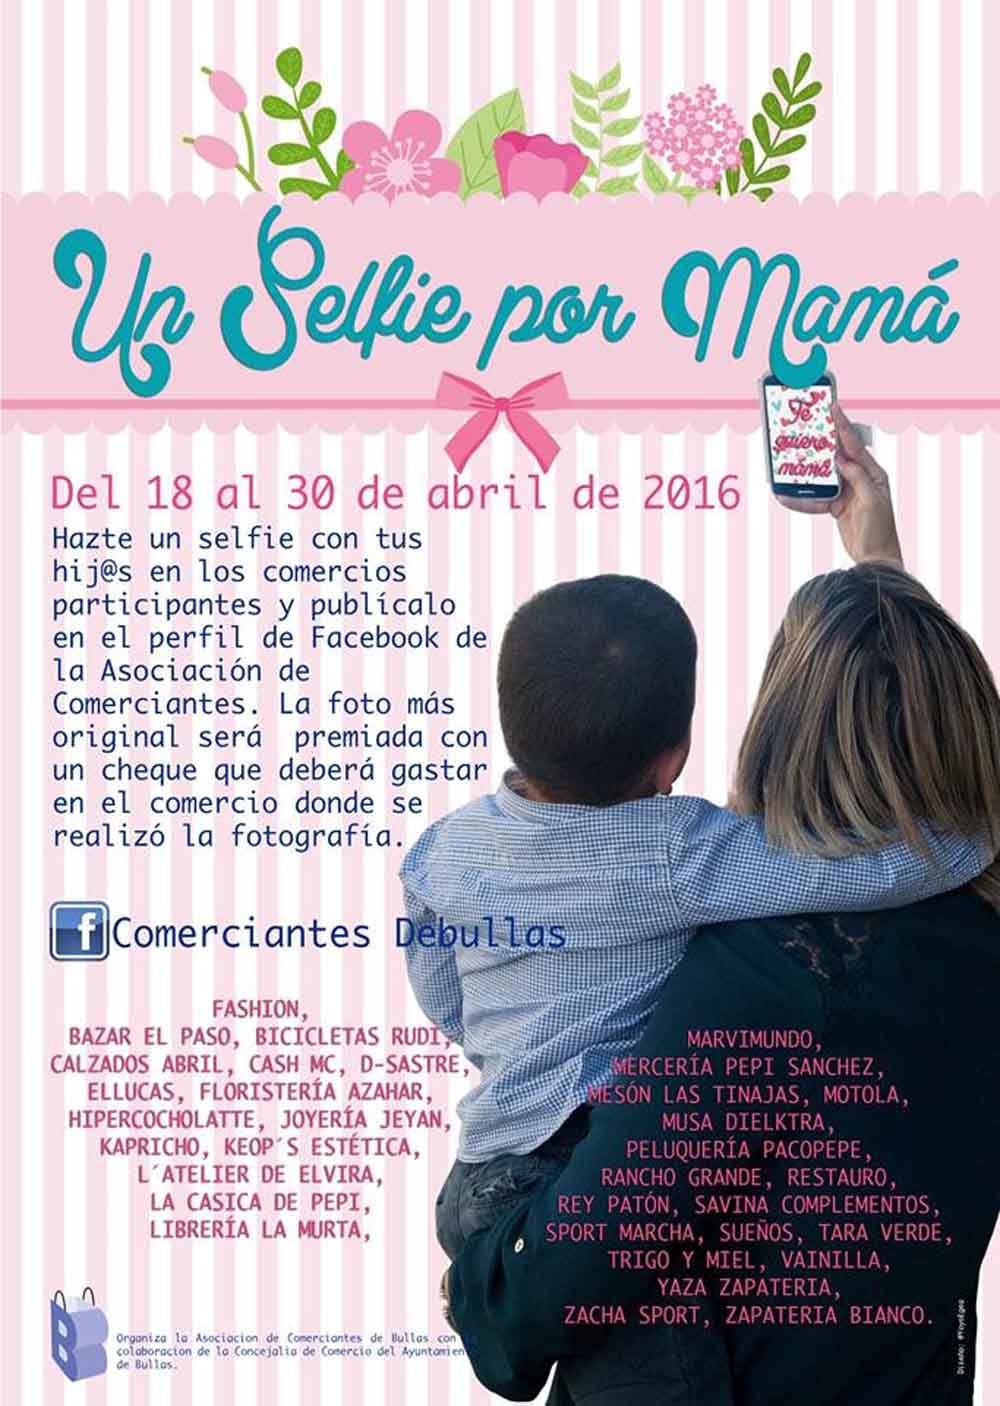 'Un selfie por mamá' nueva campaña de la Asociación de Comerciantes de Bullas para el Día de la Madre